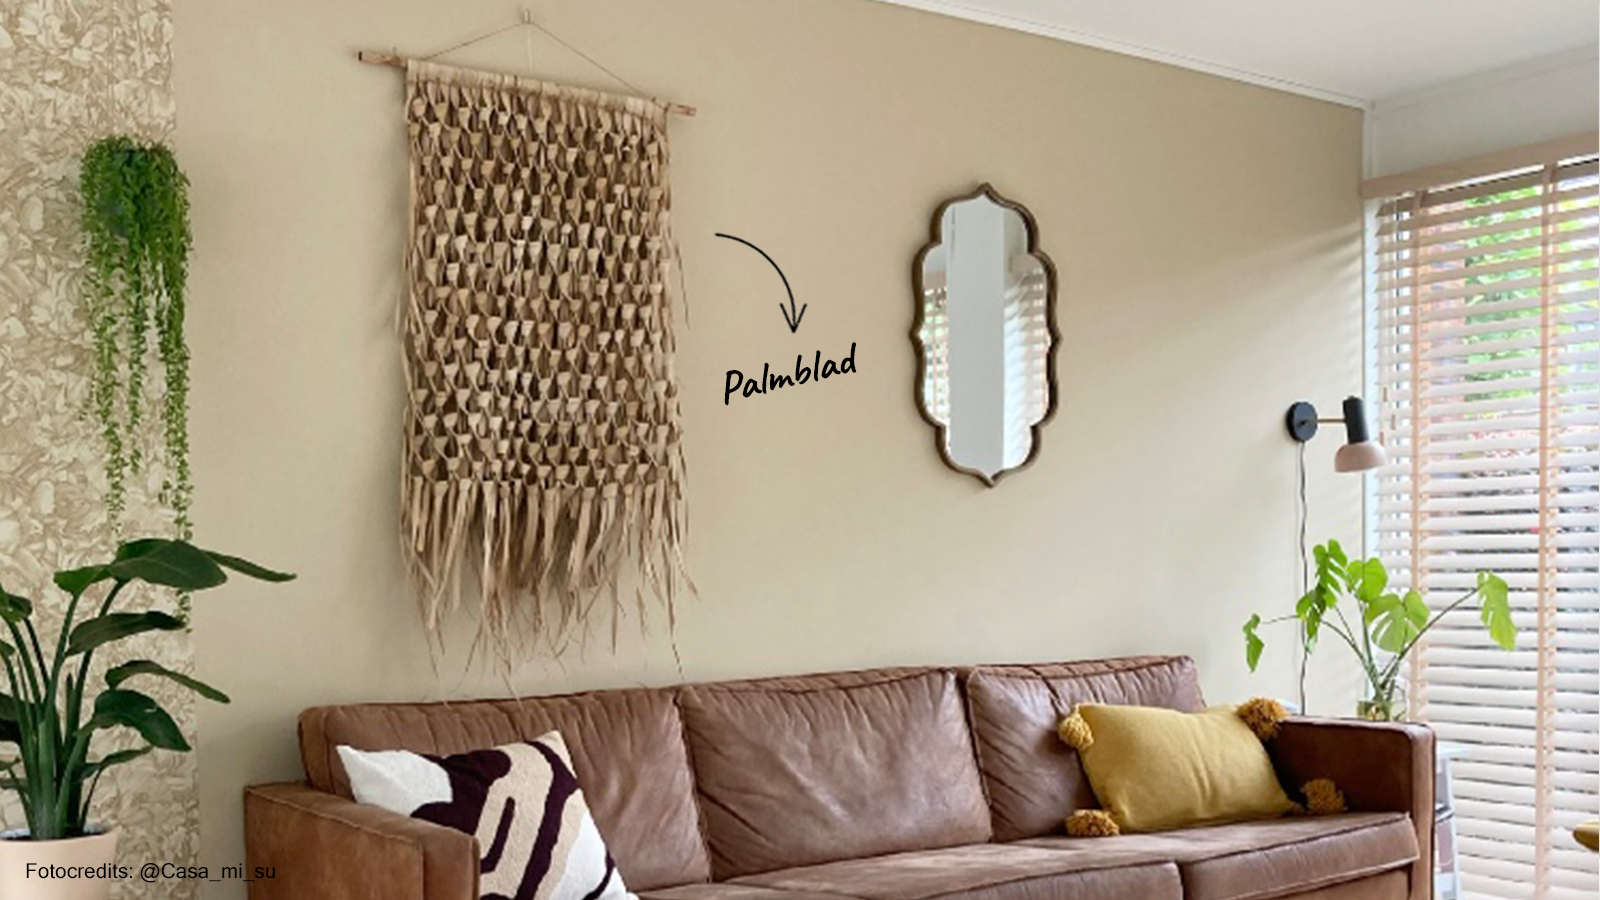 NL wandkleed van palmblad als wanddecoratie aan het click rail ophangsysteem in woonmaker